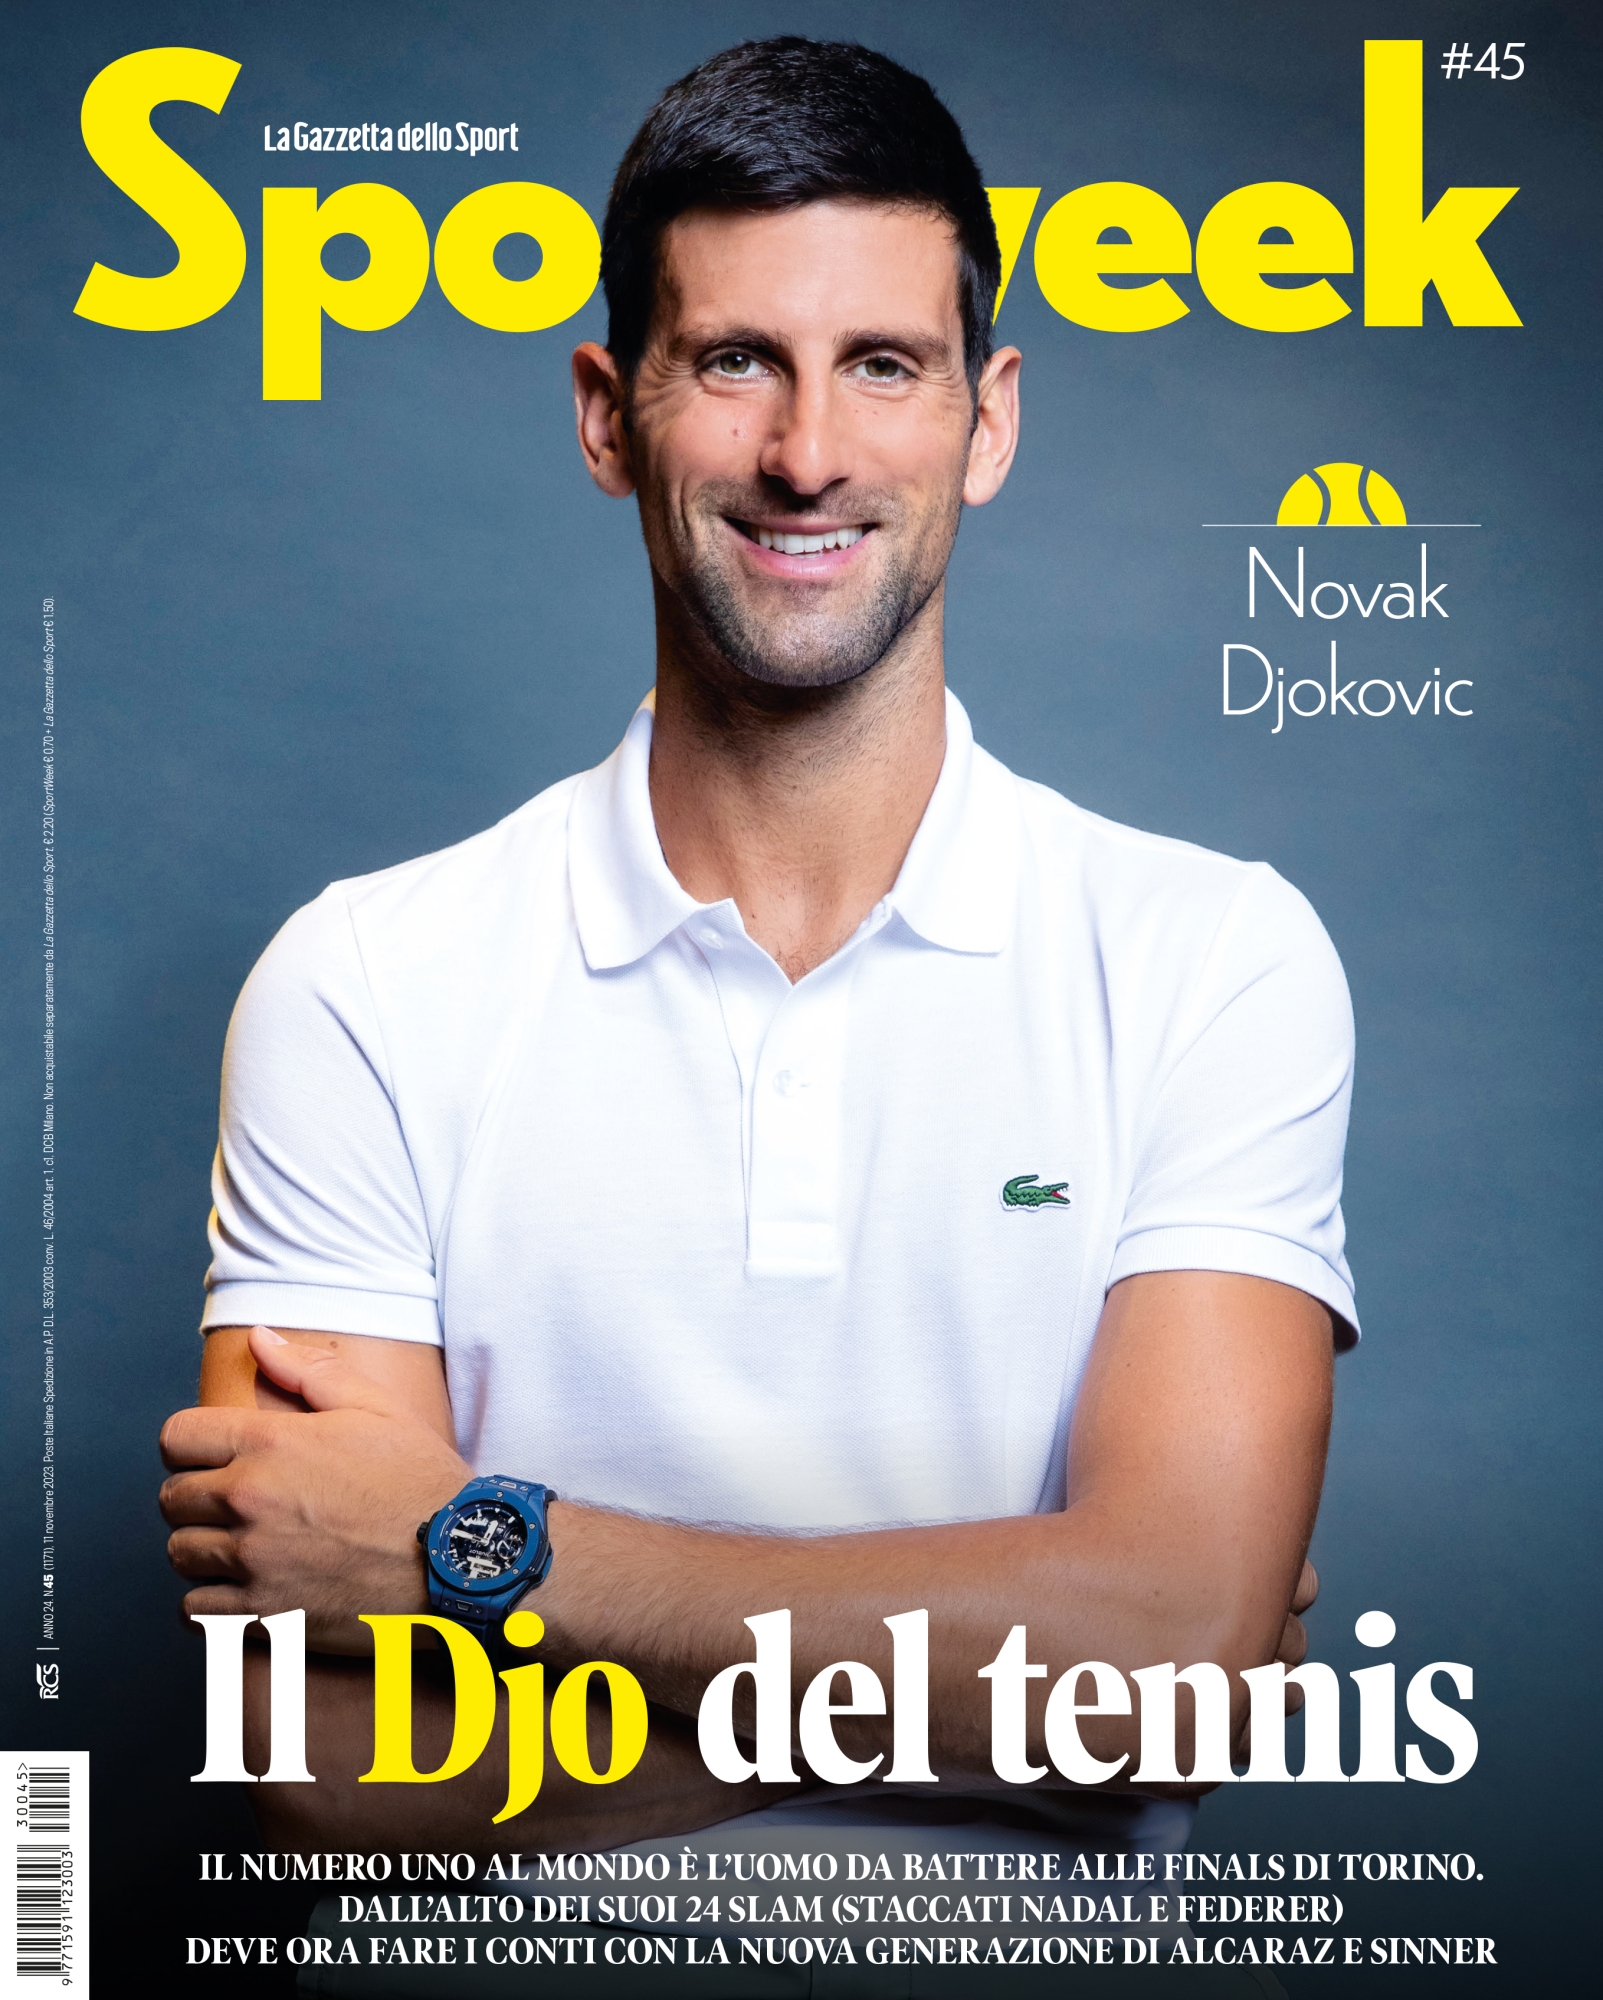 copertina sportweek djokovic